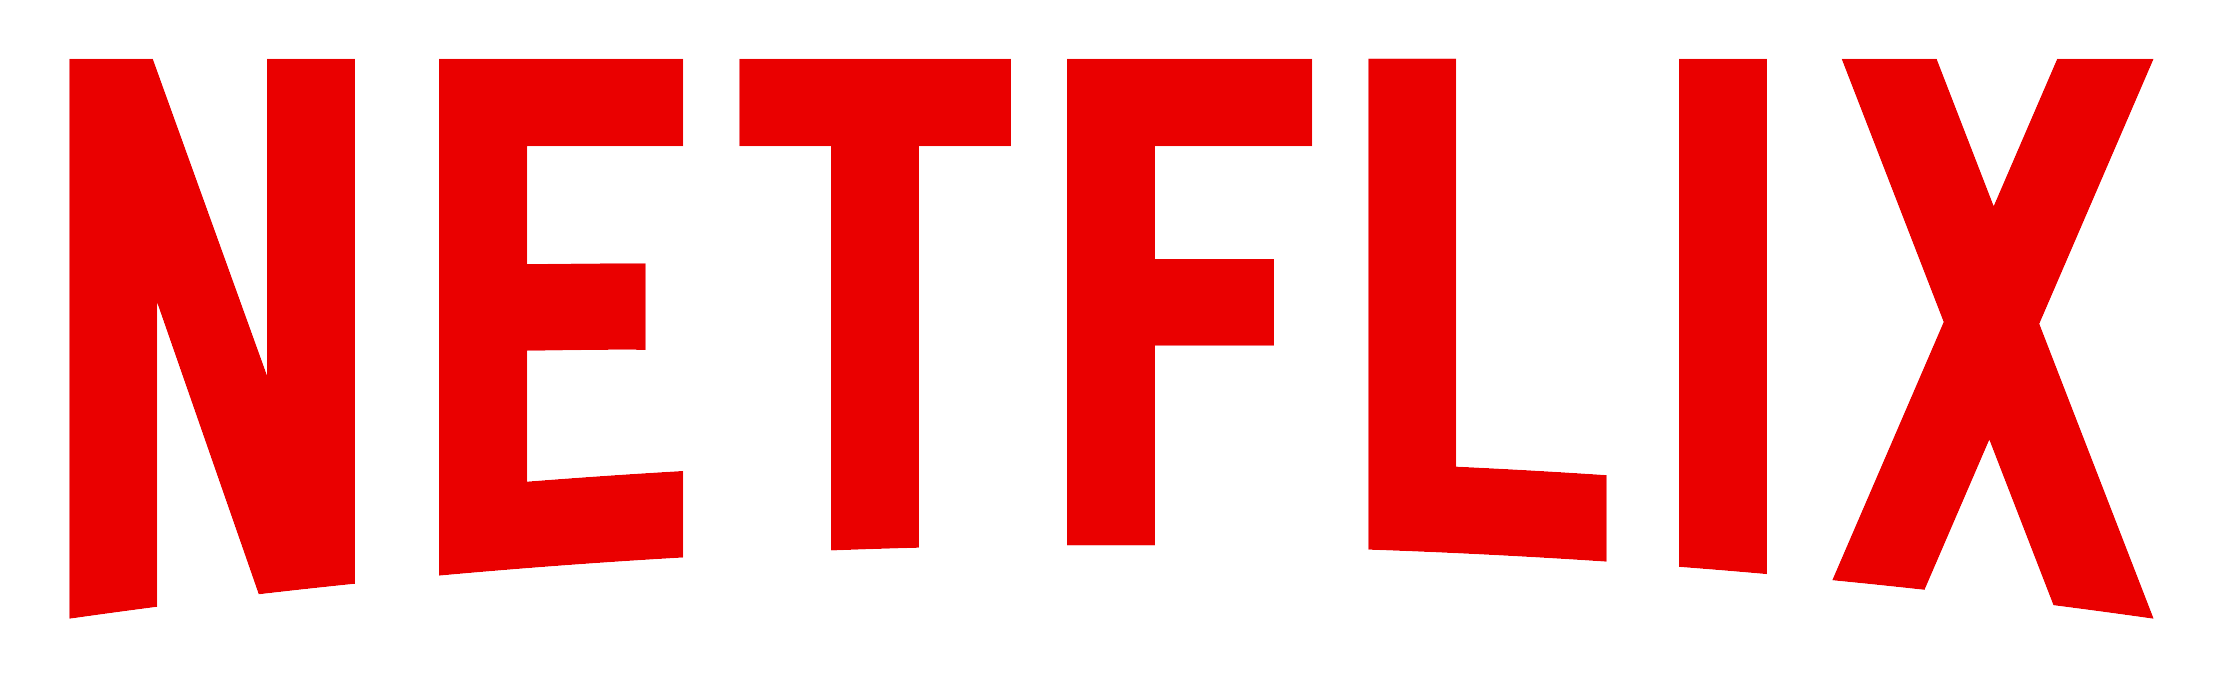 LOGO NETFLIX | Netflix, Tv show logos, Tv shows online - Cute Netflix Logo